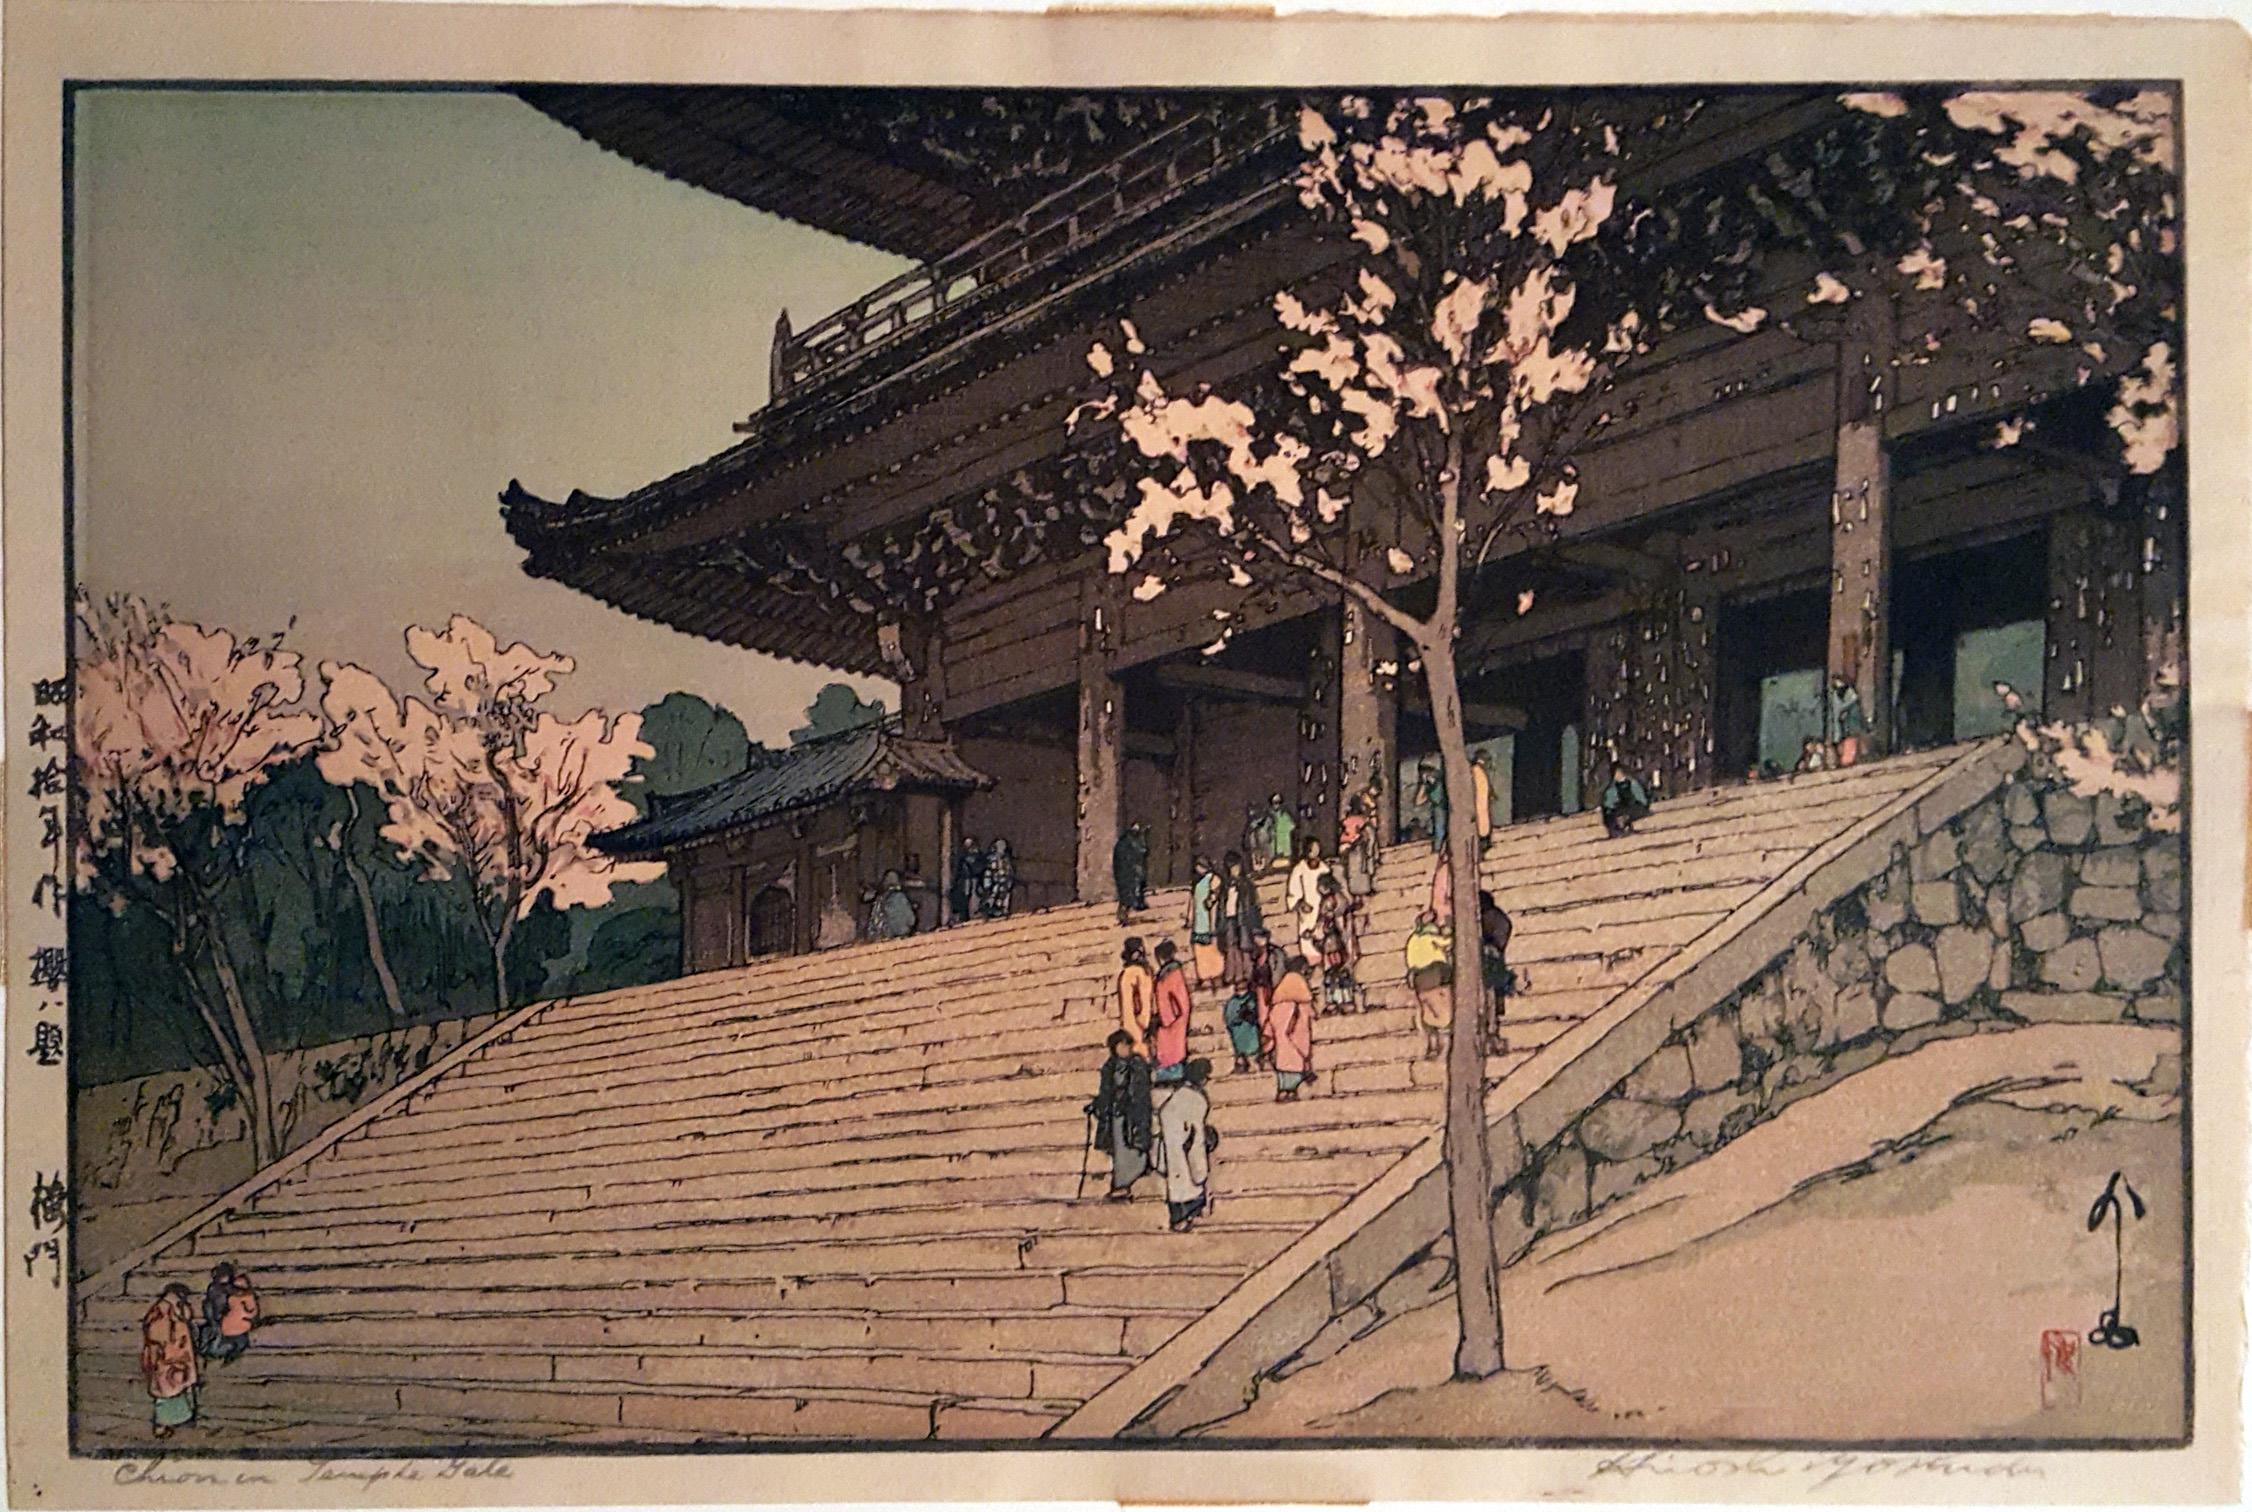 Chion-in Temple Gate by Hiroshi Yoshida